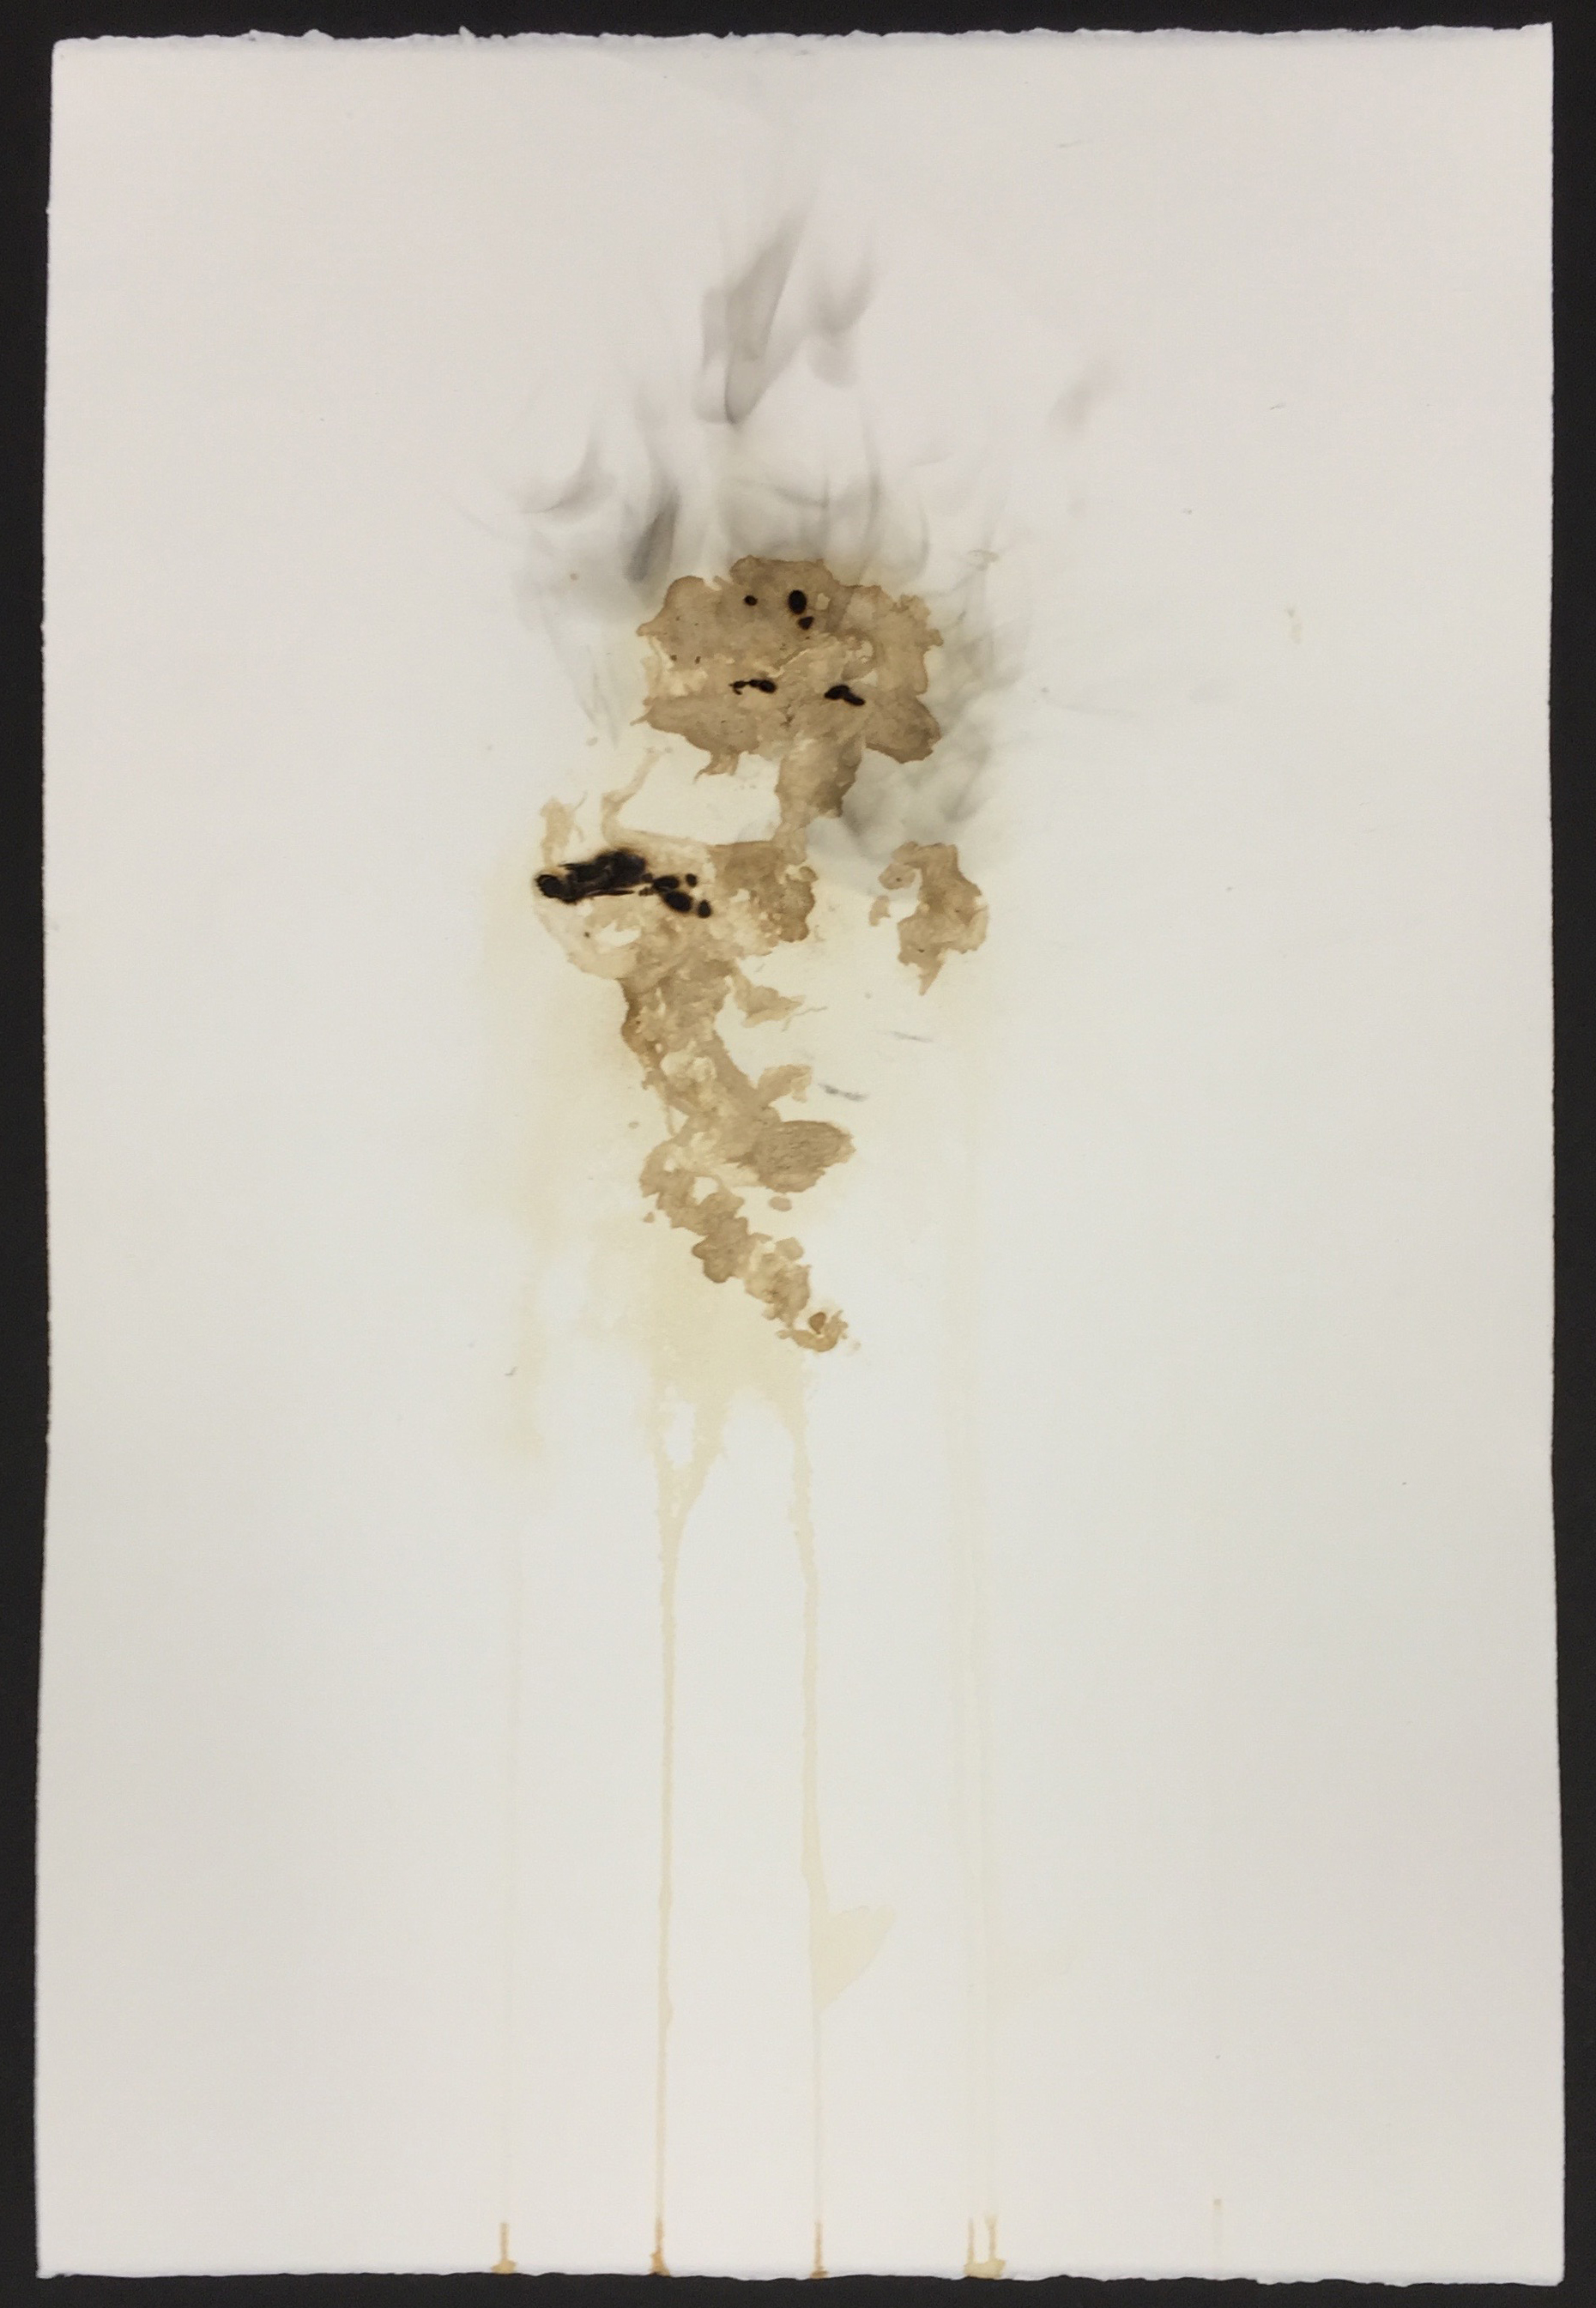  Tobacco print, smoke, scorched paper  15x22 